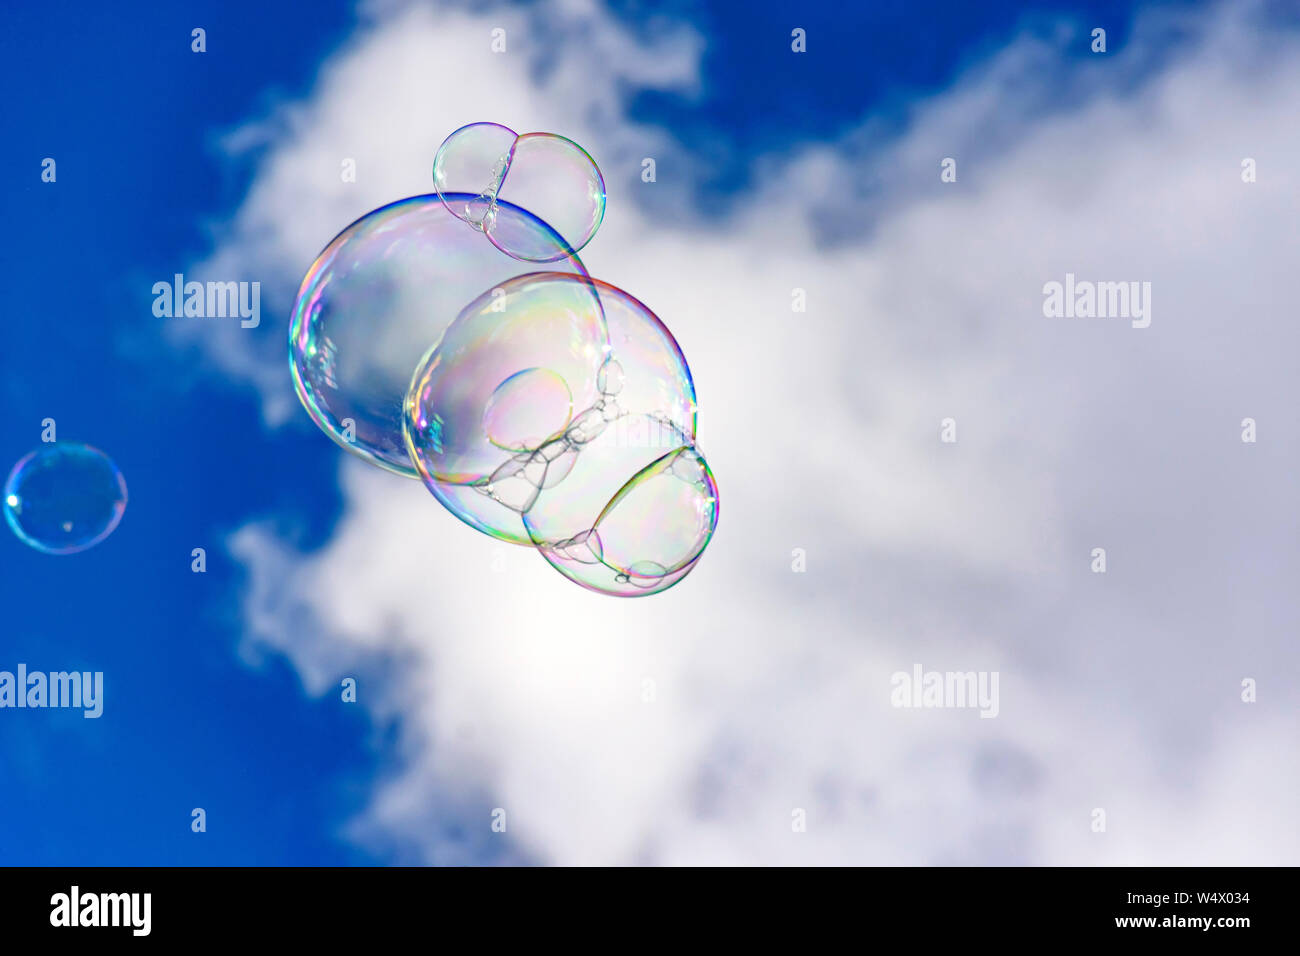 Des bulles de savon avec leurs couleurs et les transparents qui flottent  dans le ciel bleu Photo Stock - Alamy